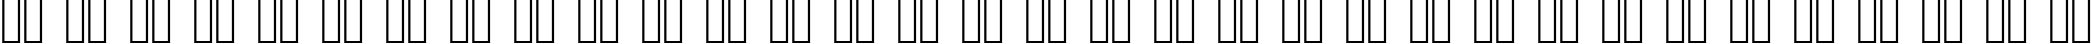 Пример написания русского алфавита шрифтом Playbill